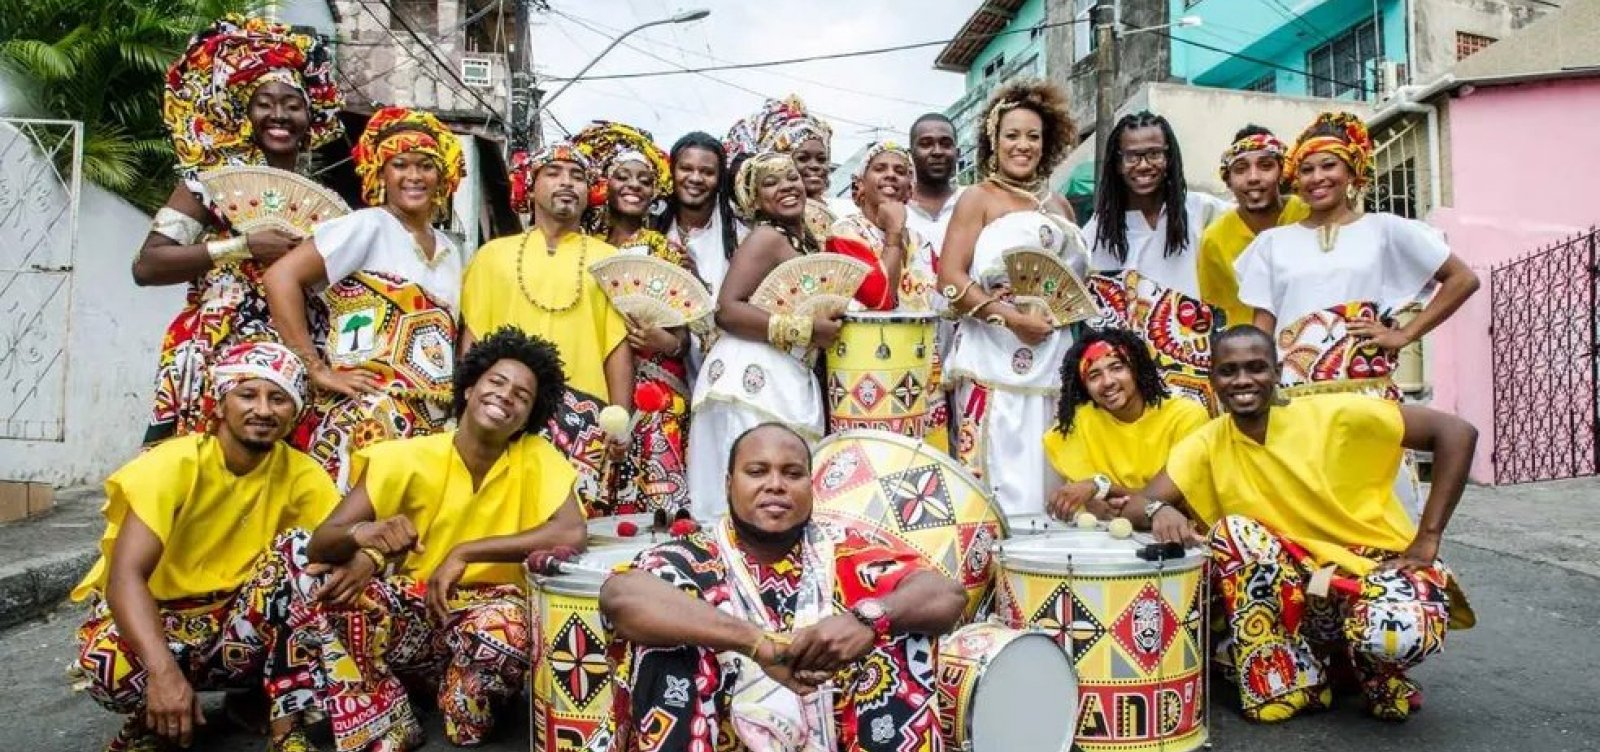 Band'Aiyê denuncia racismo em restaurante de Salvador: "Fomos tratados como ladrões"